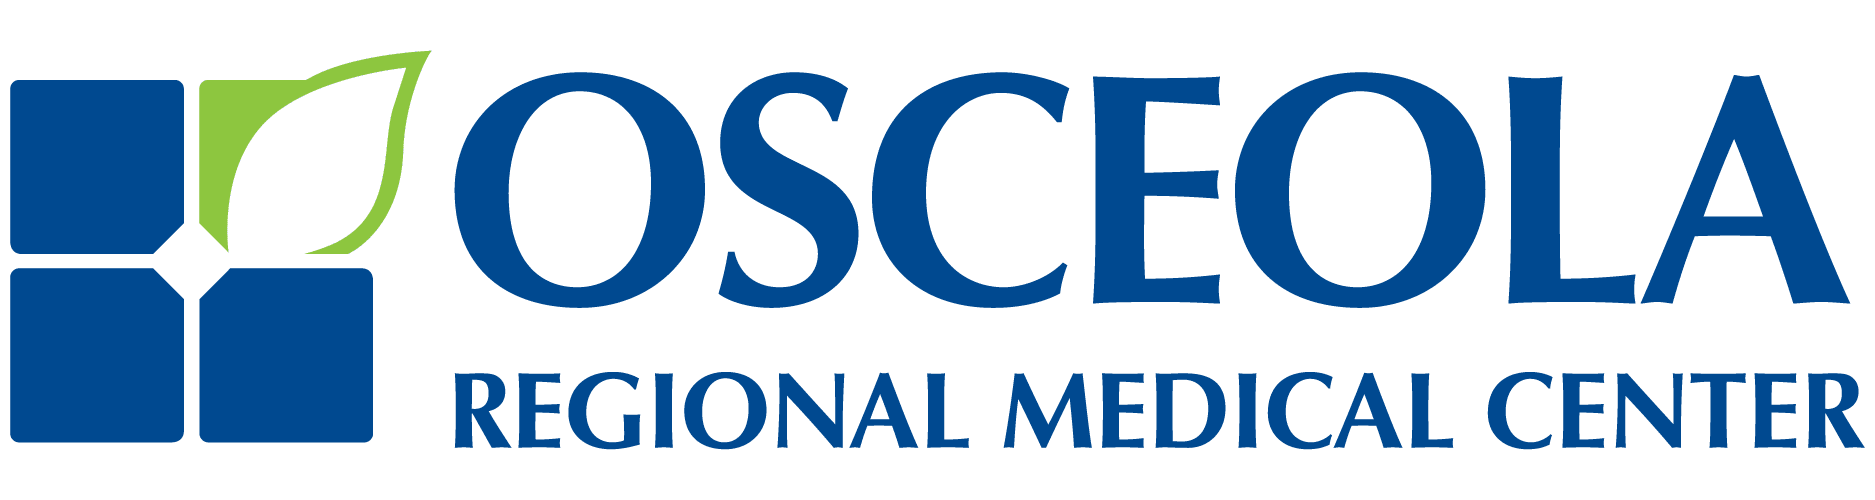 Osceola-Regional-Medical-Center_Color-logo.png